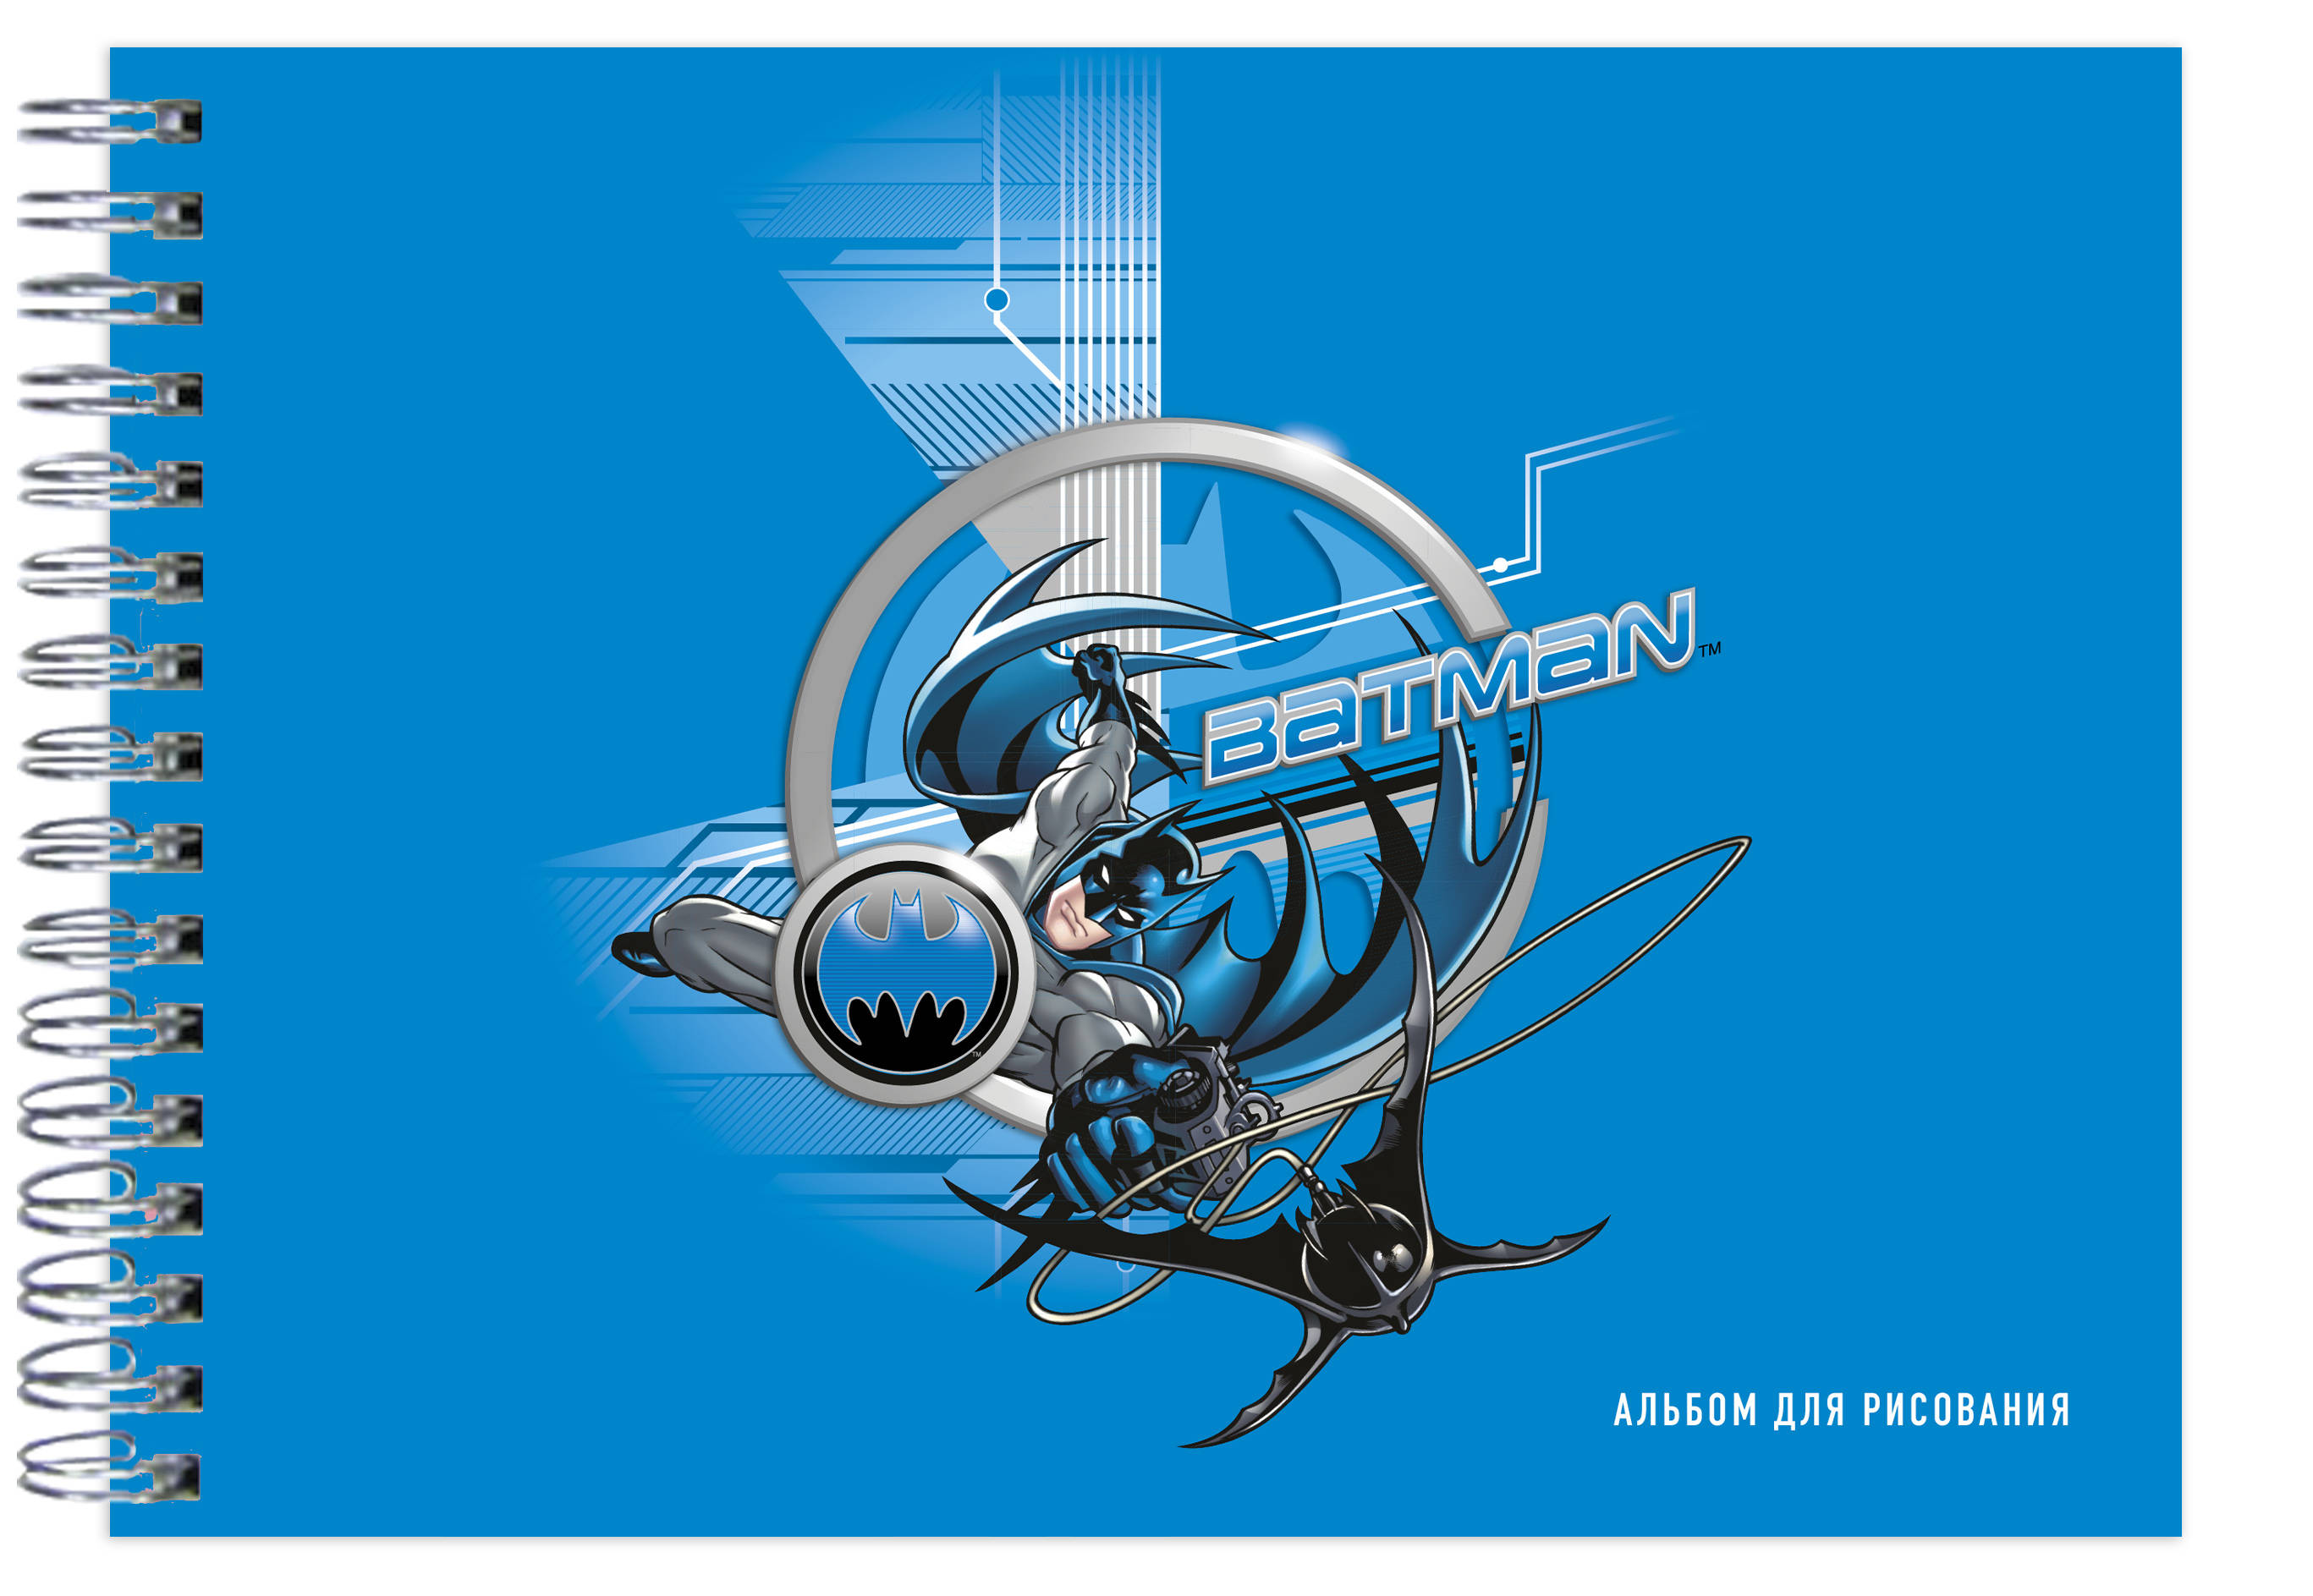 Альбом для рисования Вселенная DC: Бэтмен (А4) от 1С Интерес